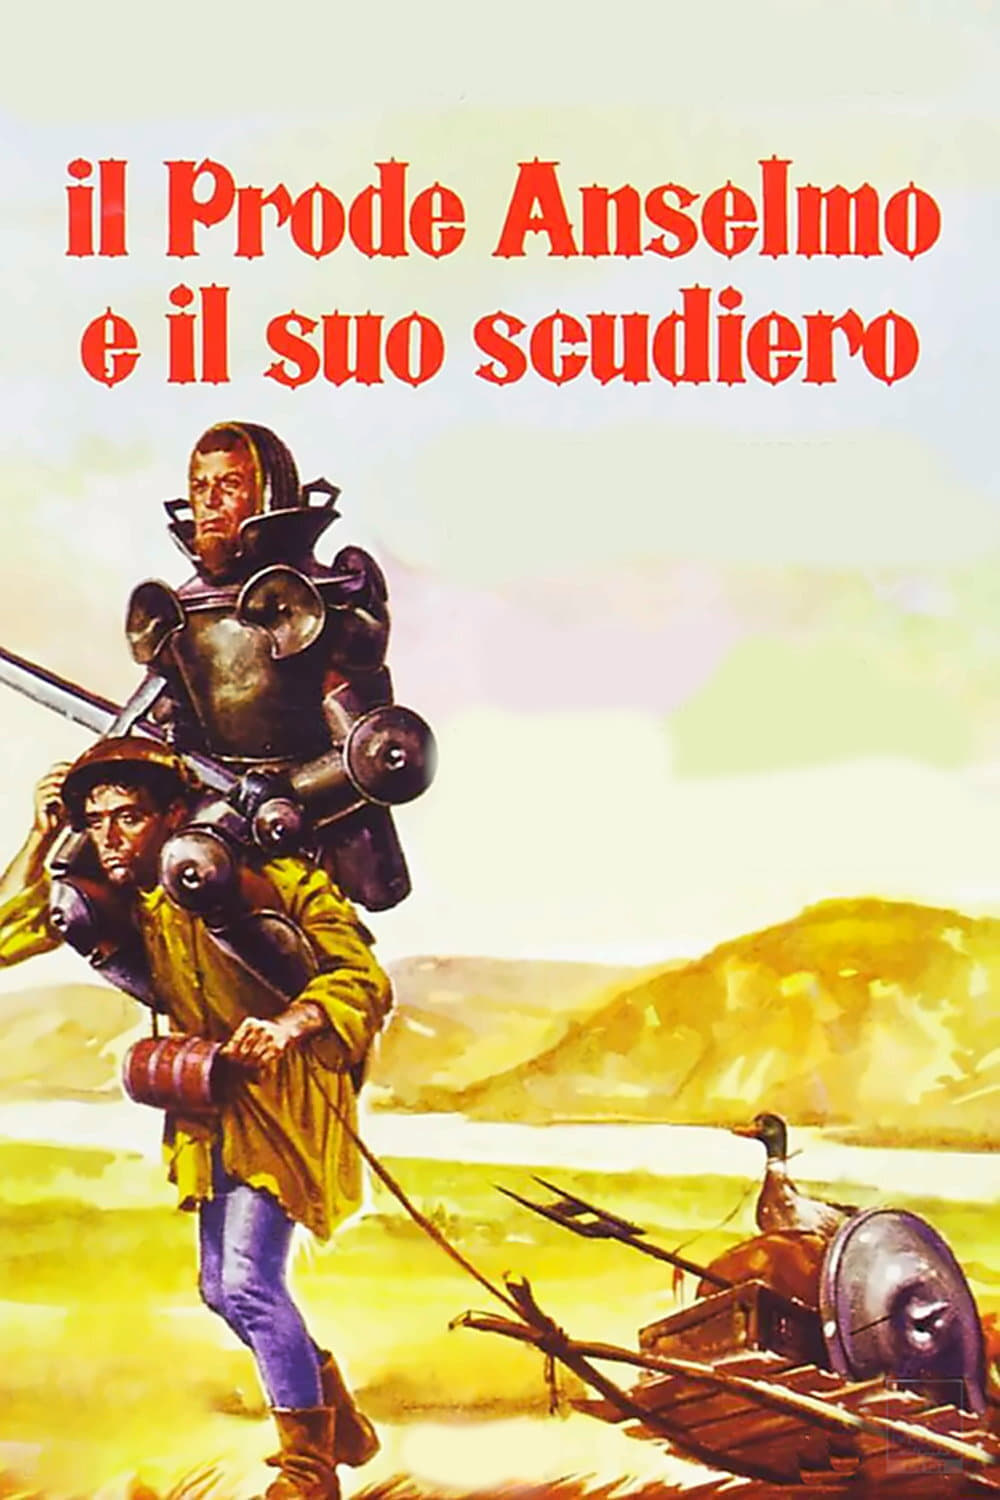 El valiente Anselmo y su escudero (1972)